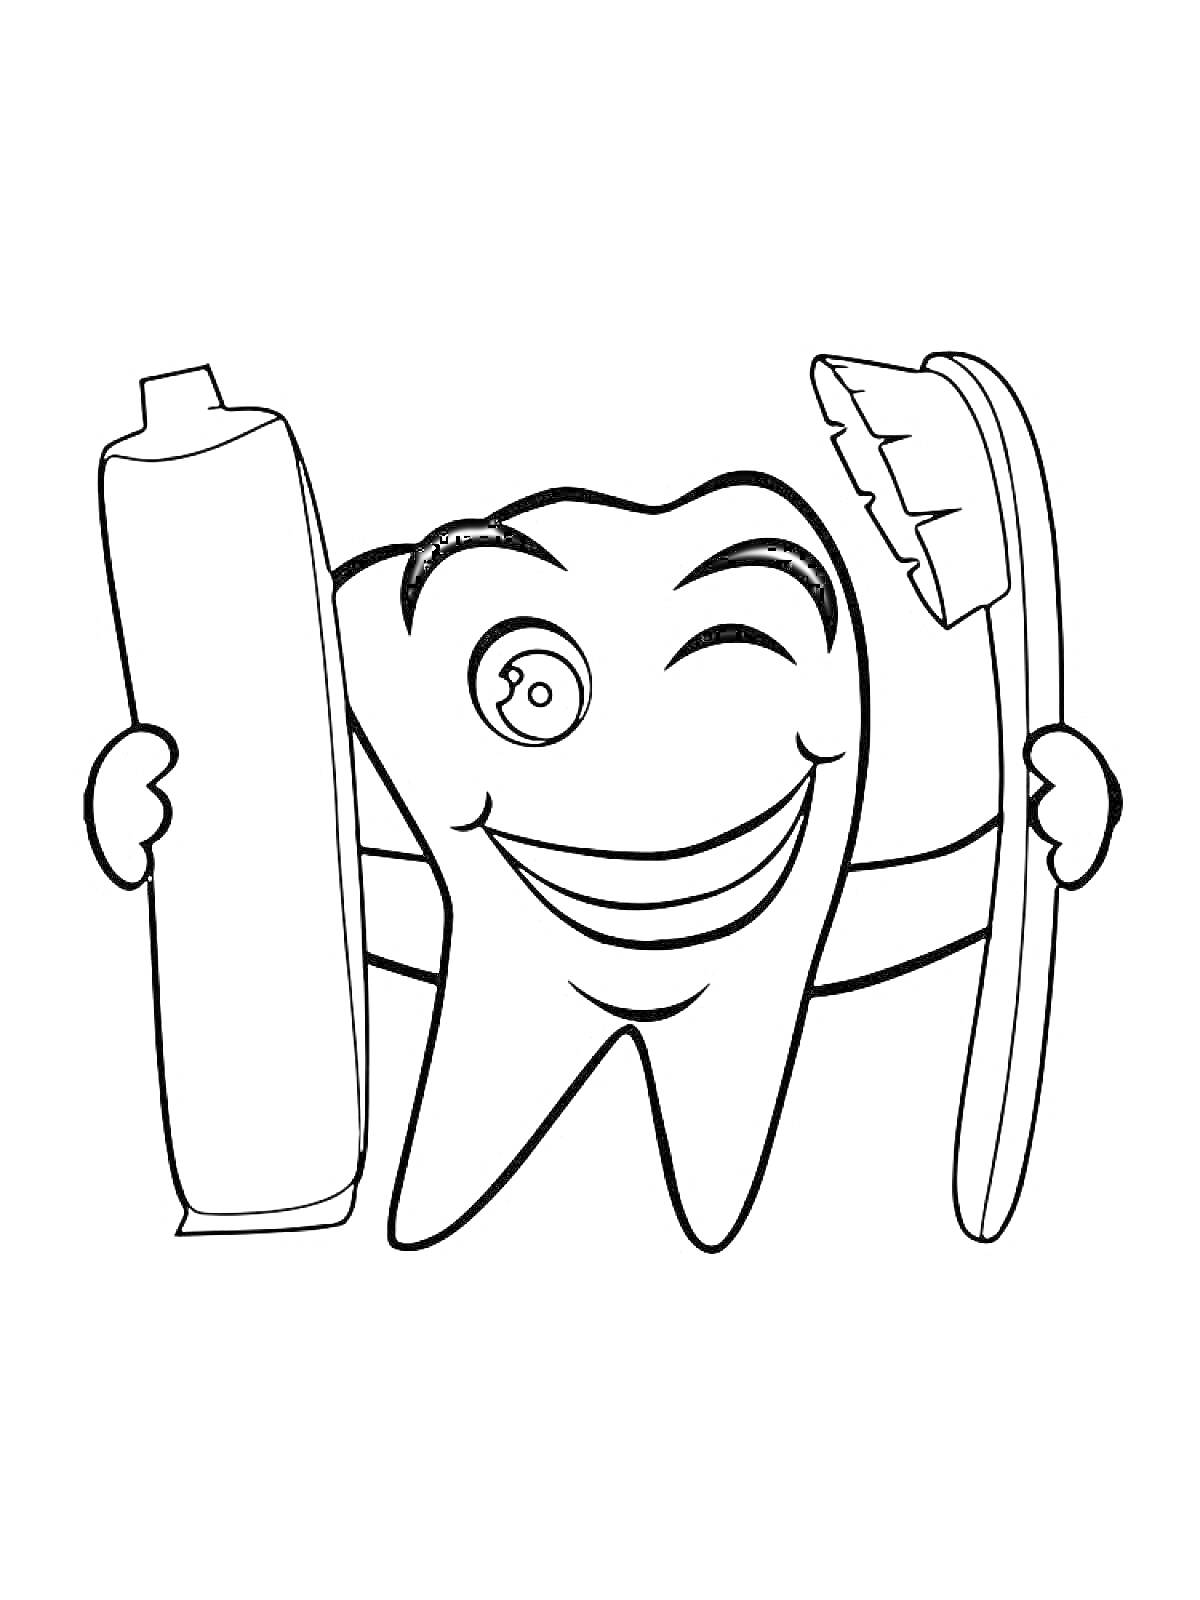 Раскраска зуб в перчатках держит зубную щетку и тюбик зубной пасты, зуб подмигивает и улыбается